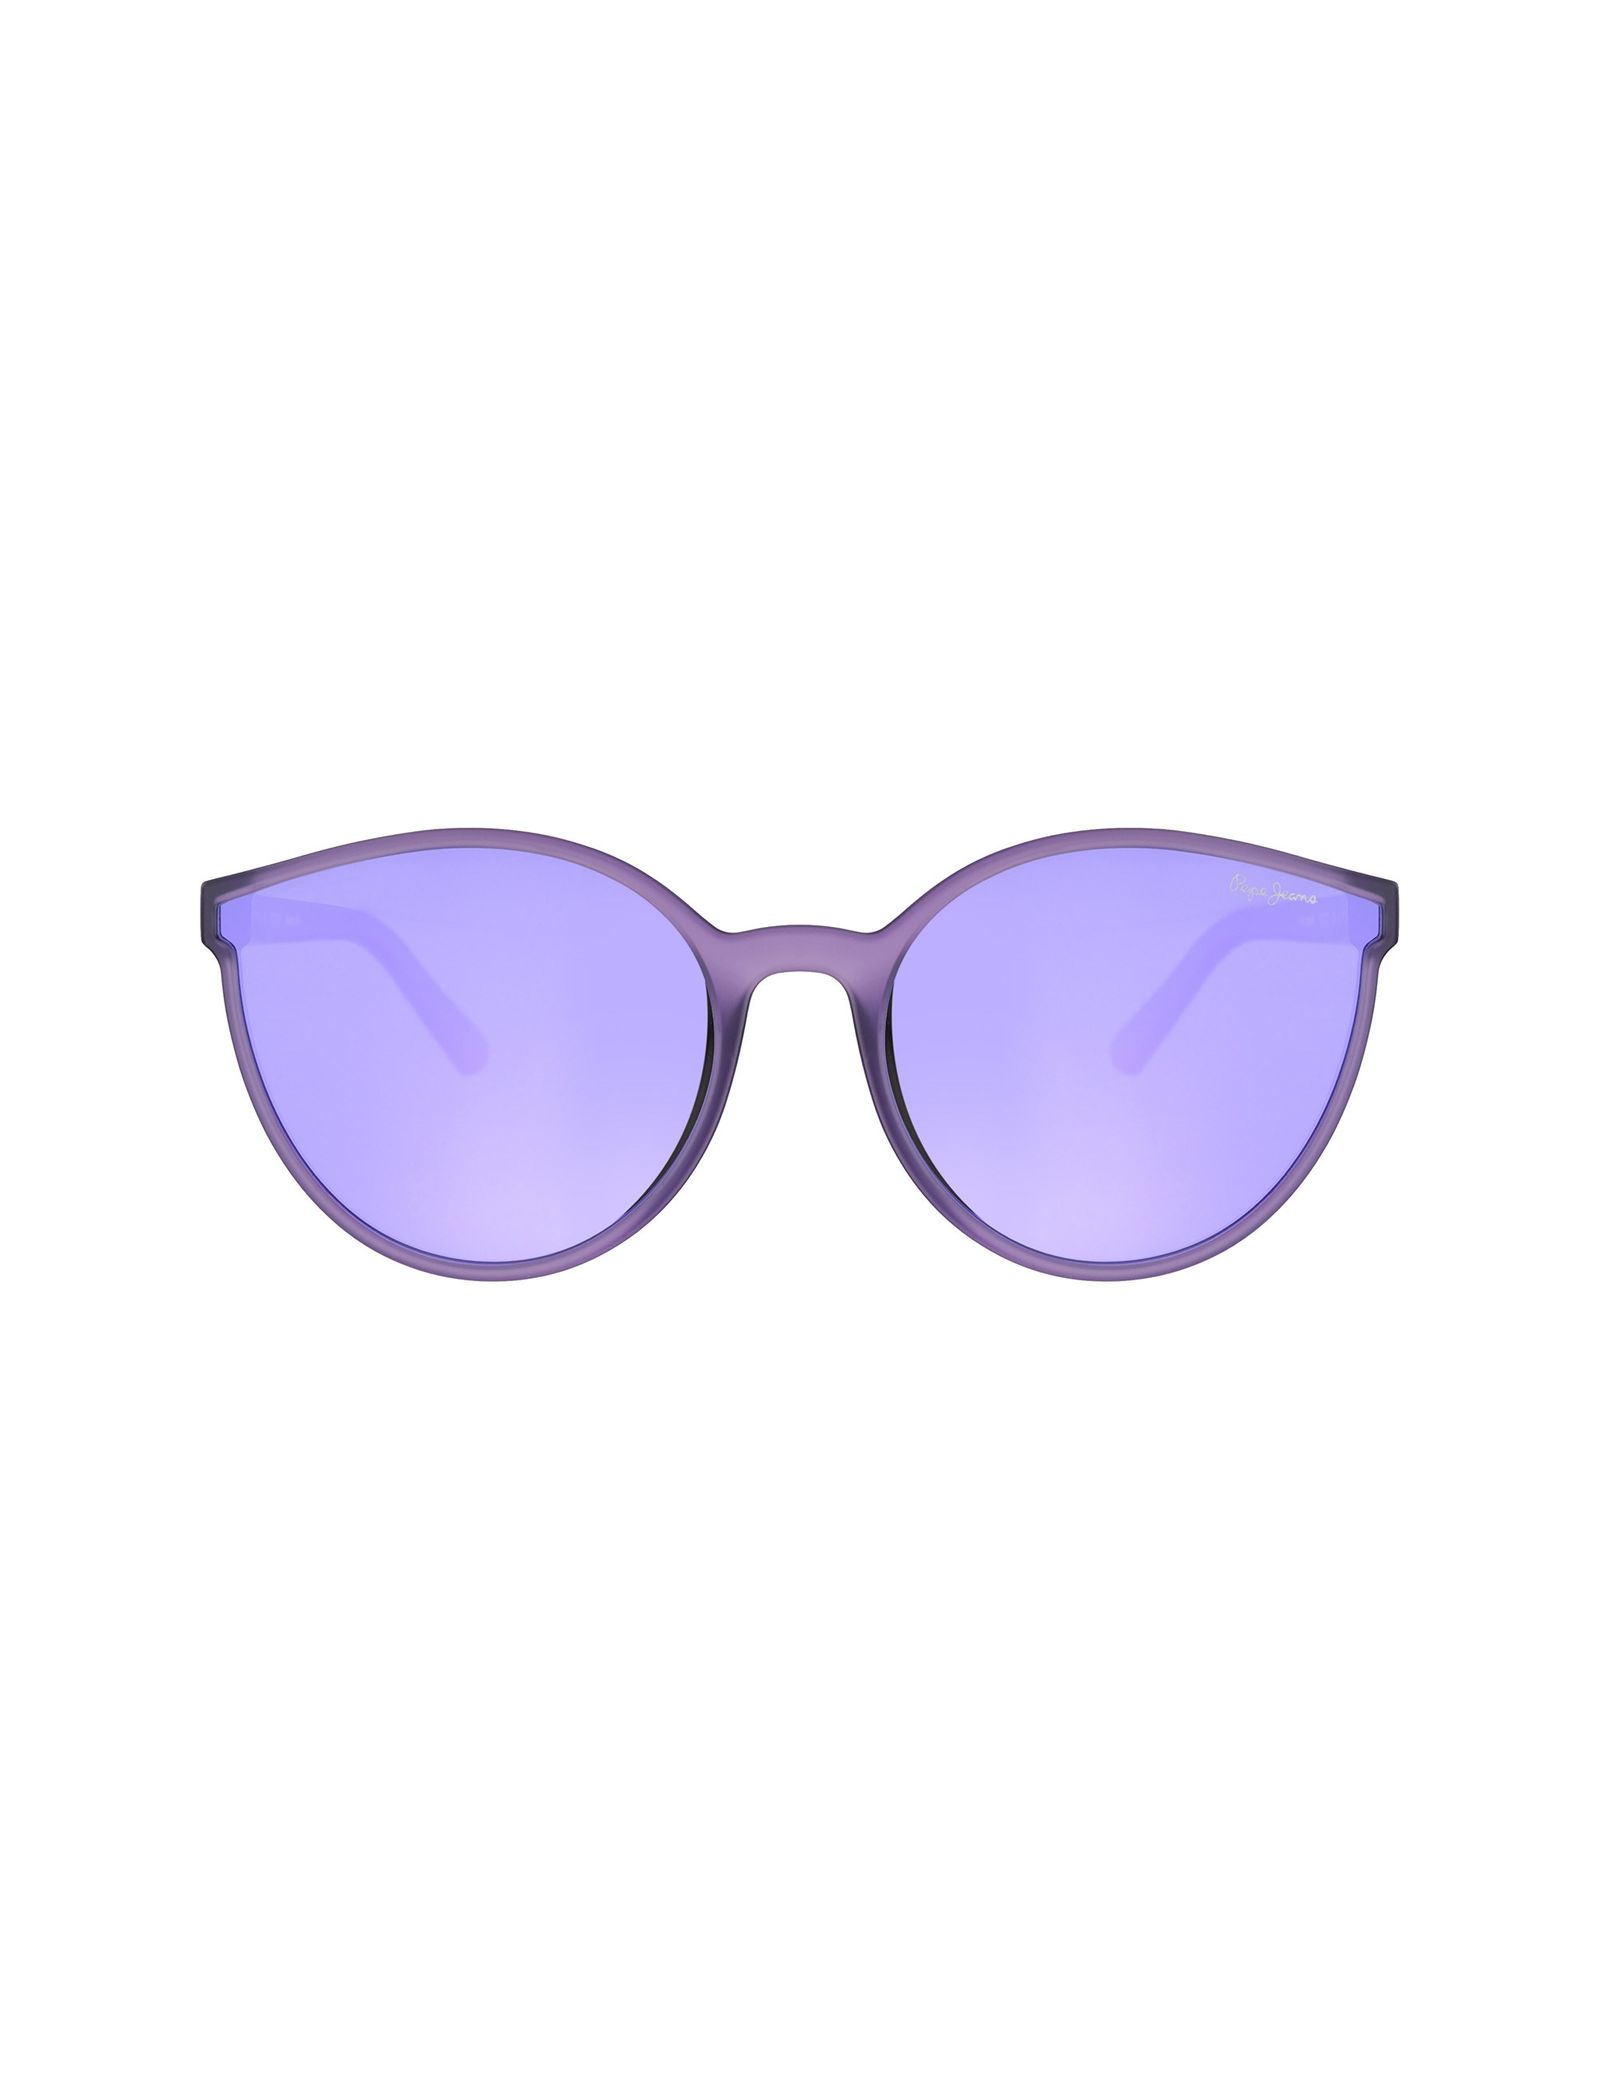 عینک آفتابی گربه ای زنانه - پپه جینز - بنفش روشن - 1